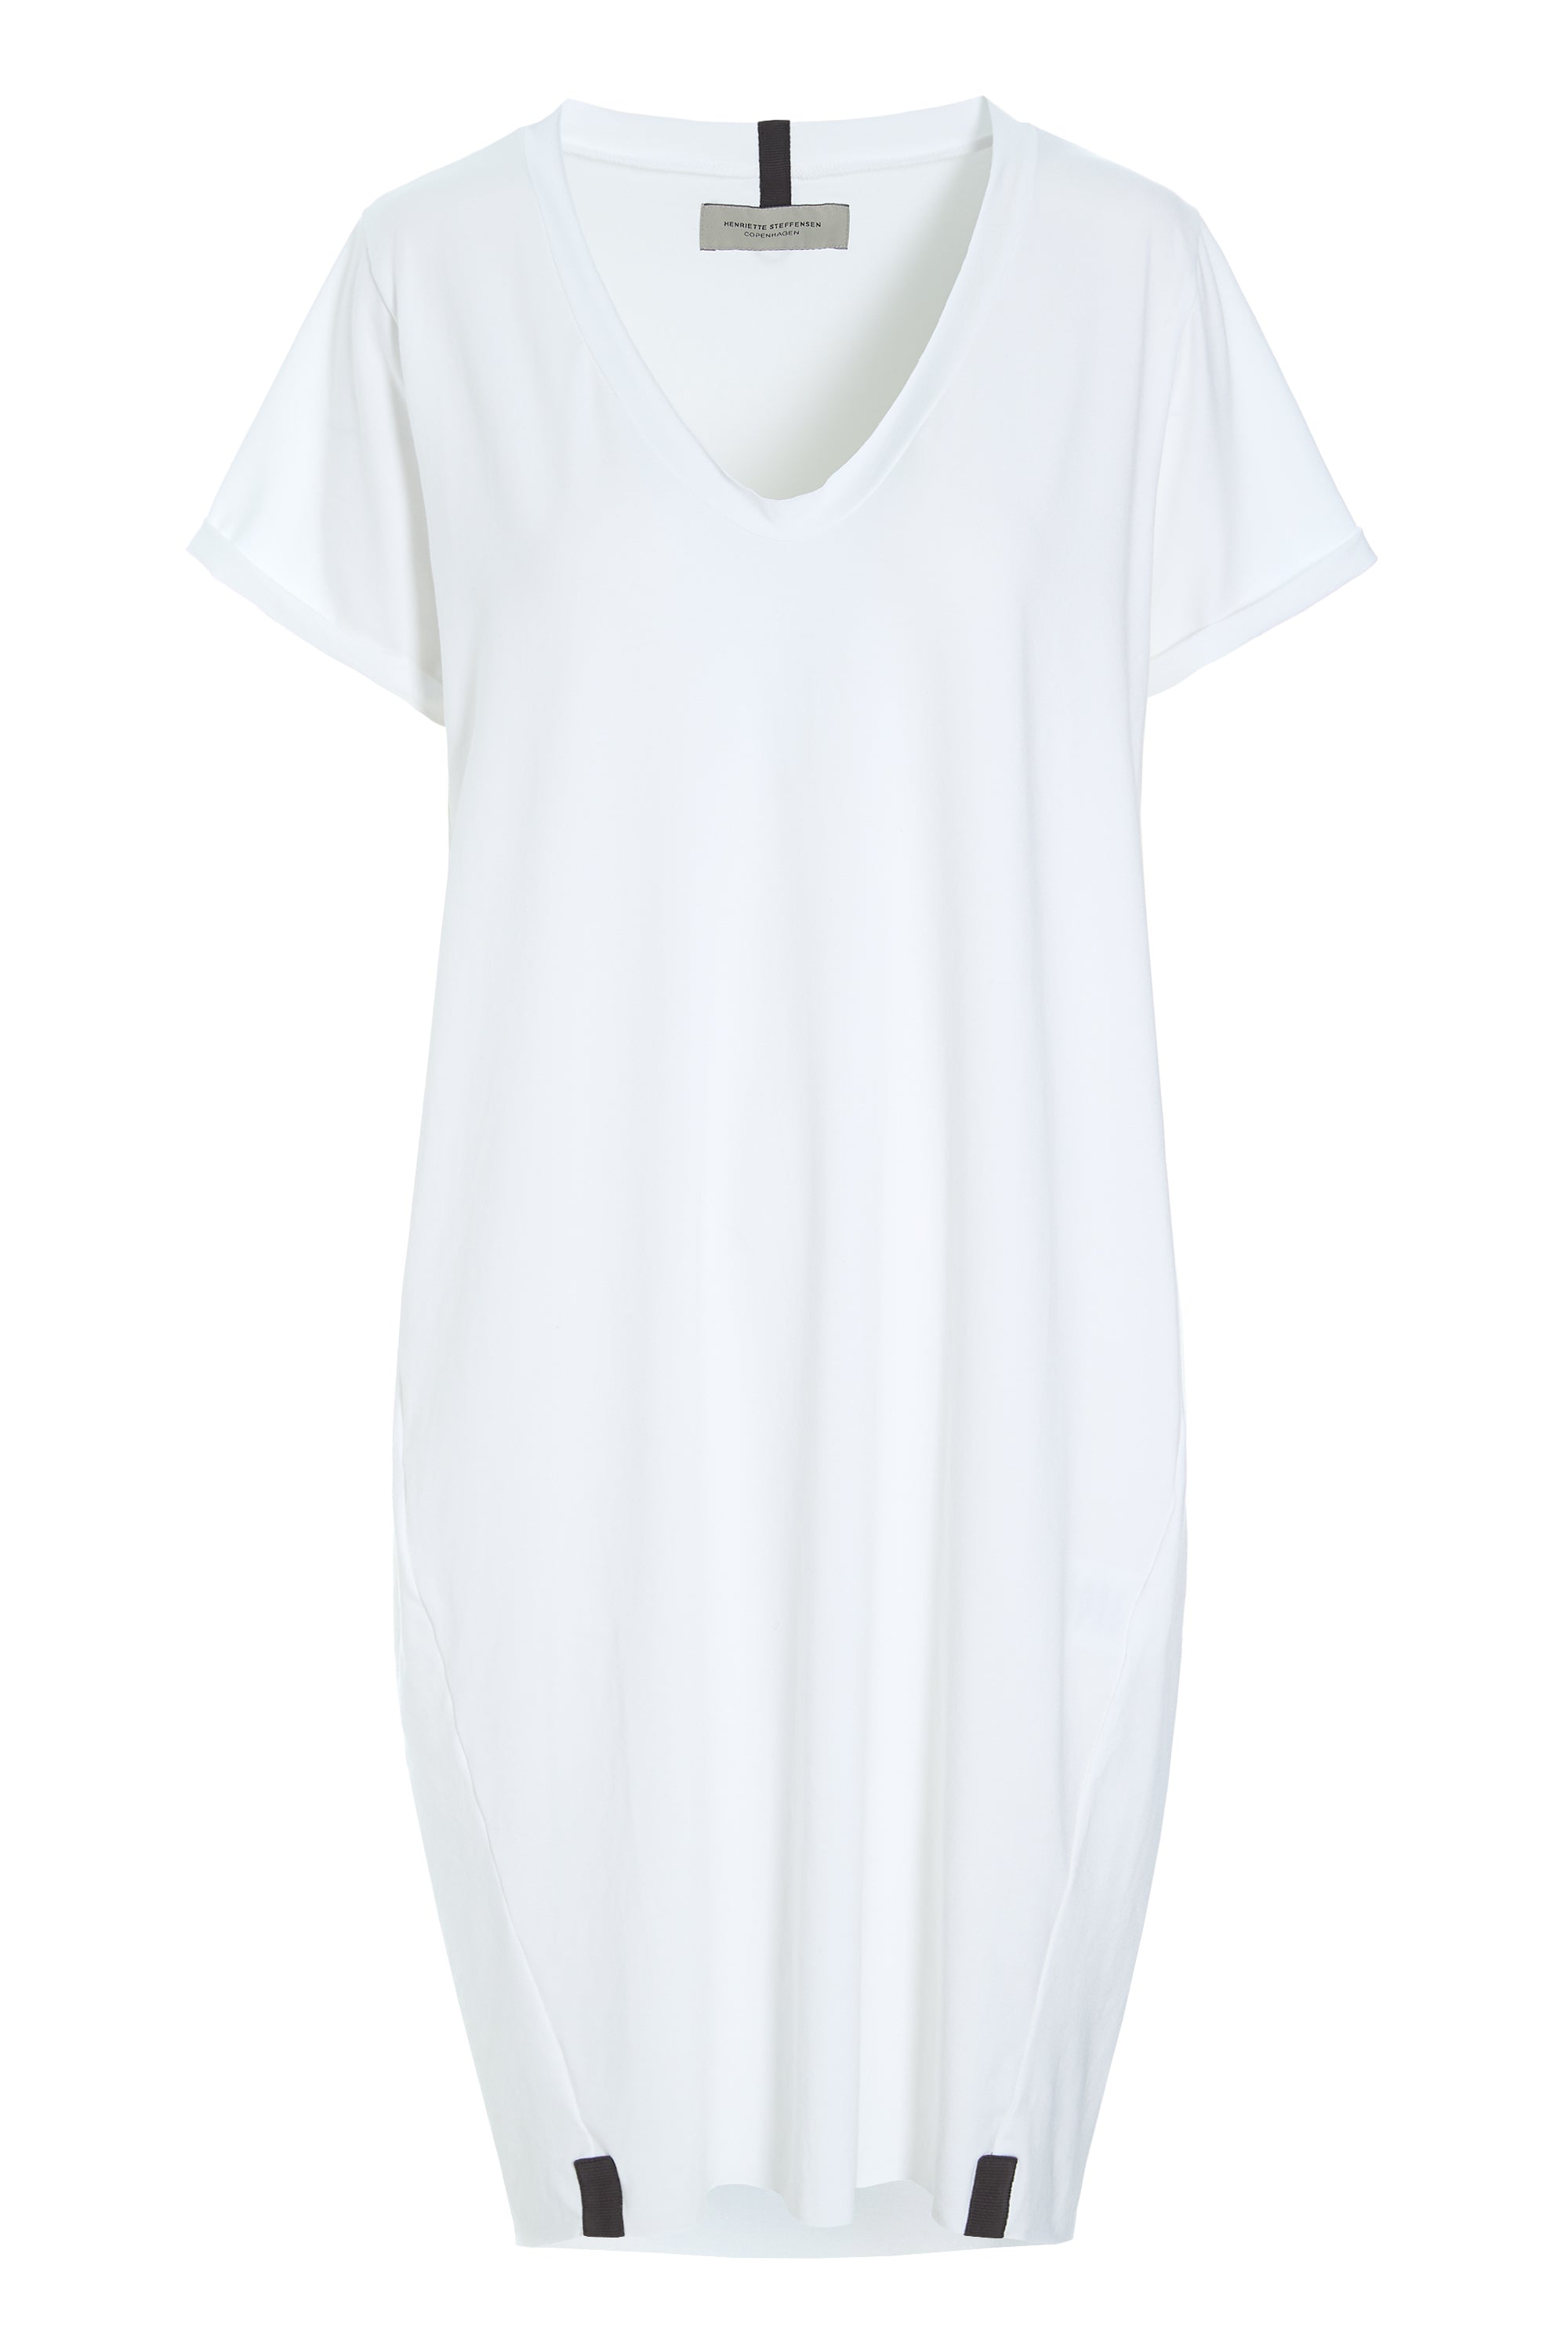 HENRIETTE STEFFENSEN COPENHAGEN KLEID V-NECK - 98049 DRESSES jersey WHITE 816